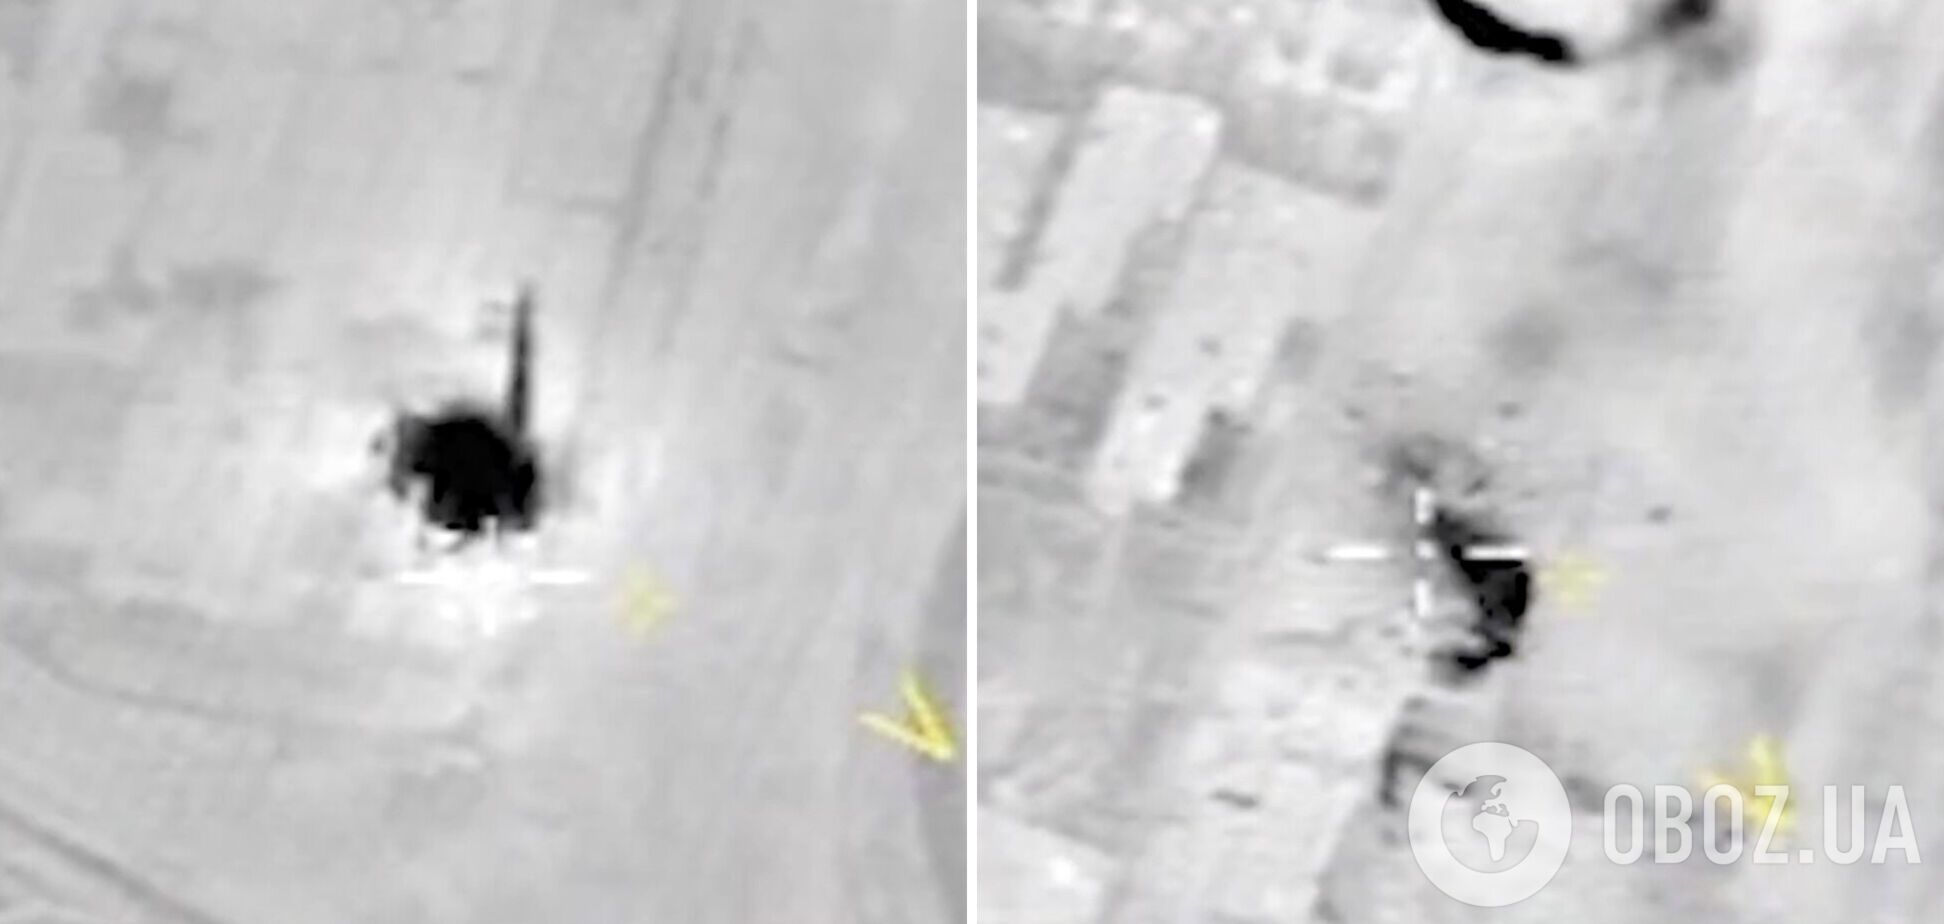 'Якщо на землі є пекло, то воно там': у мережі показали відео бомбардувань 'Азовсталі'